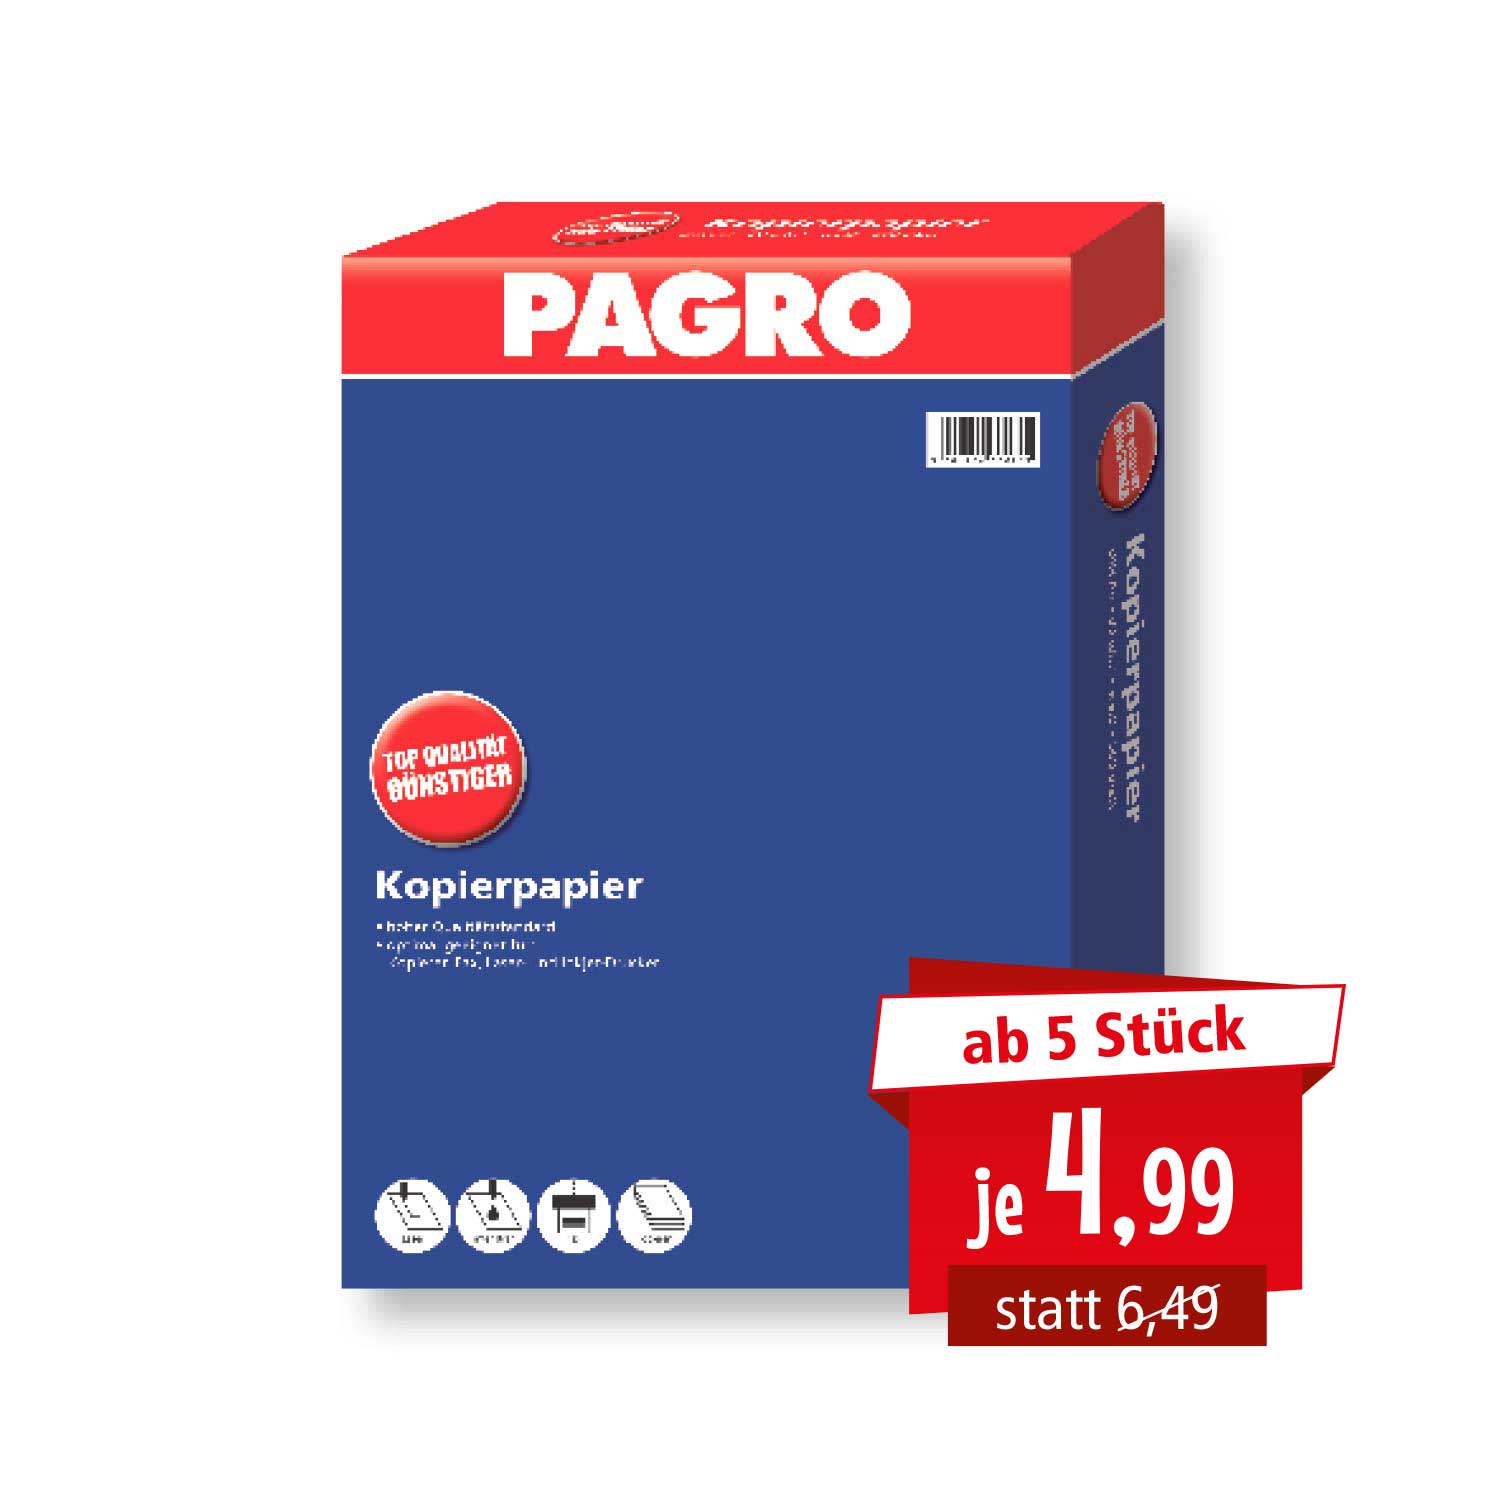 Pagro Kopierpapier A4 500 Blatt 80 g/m²